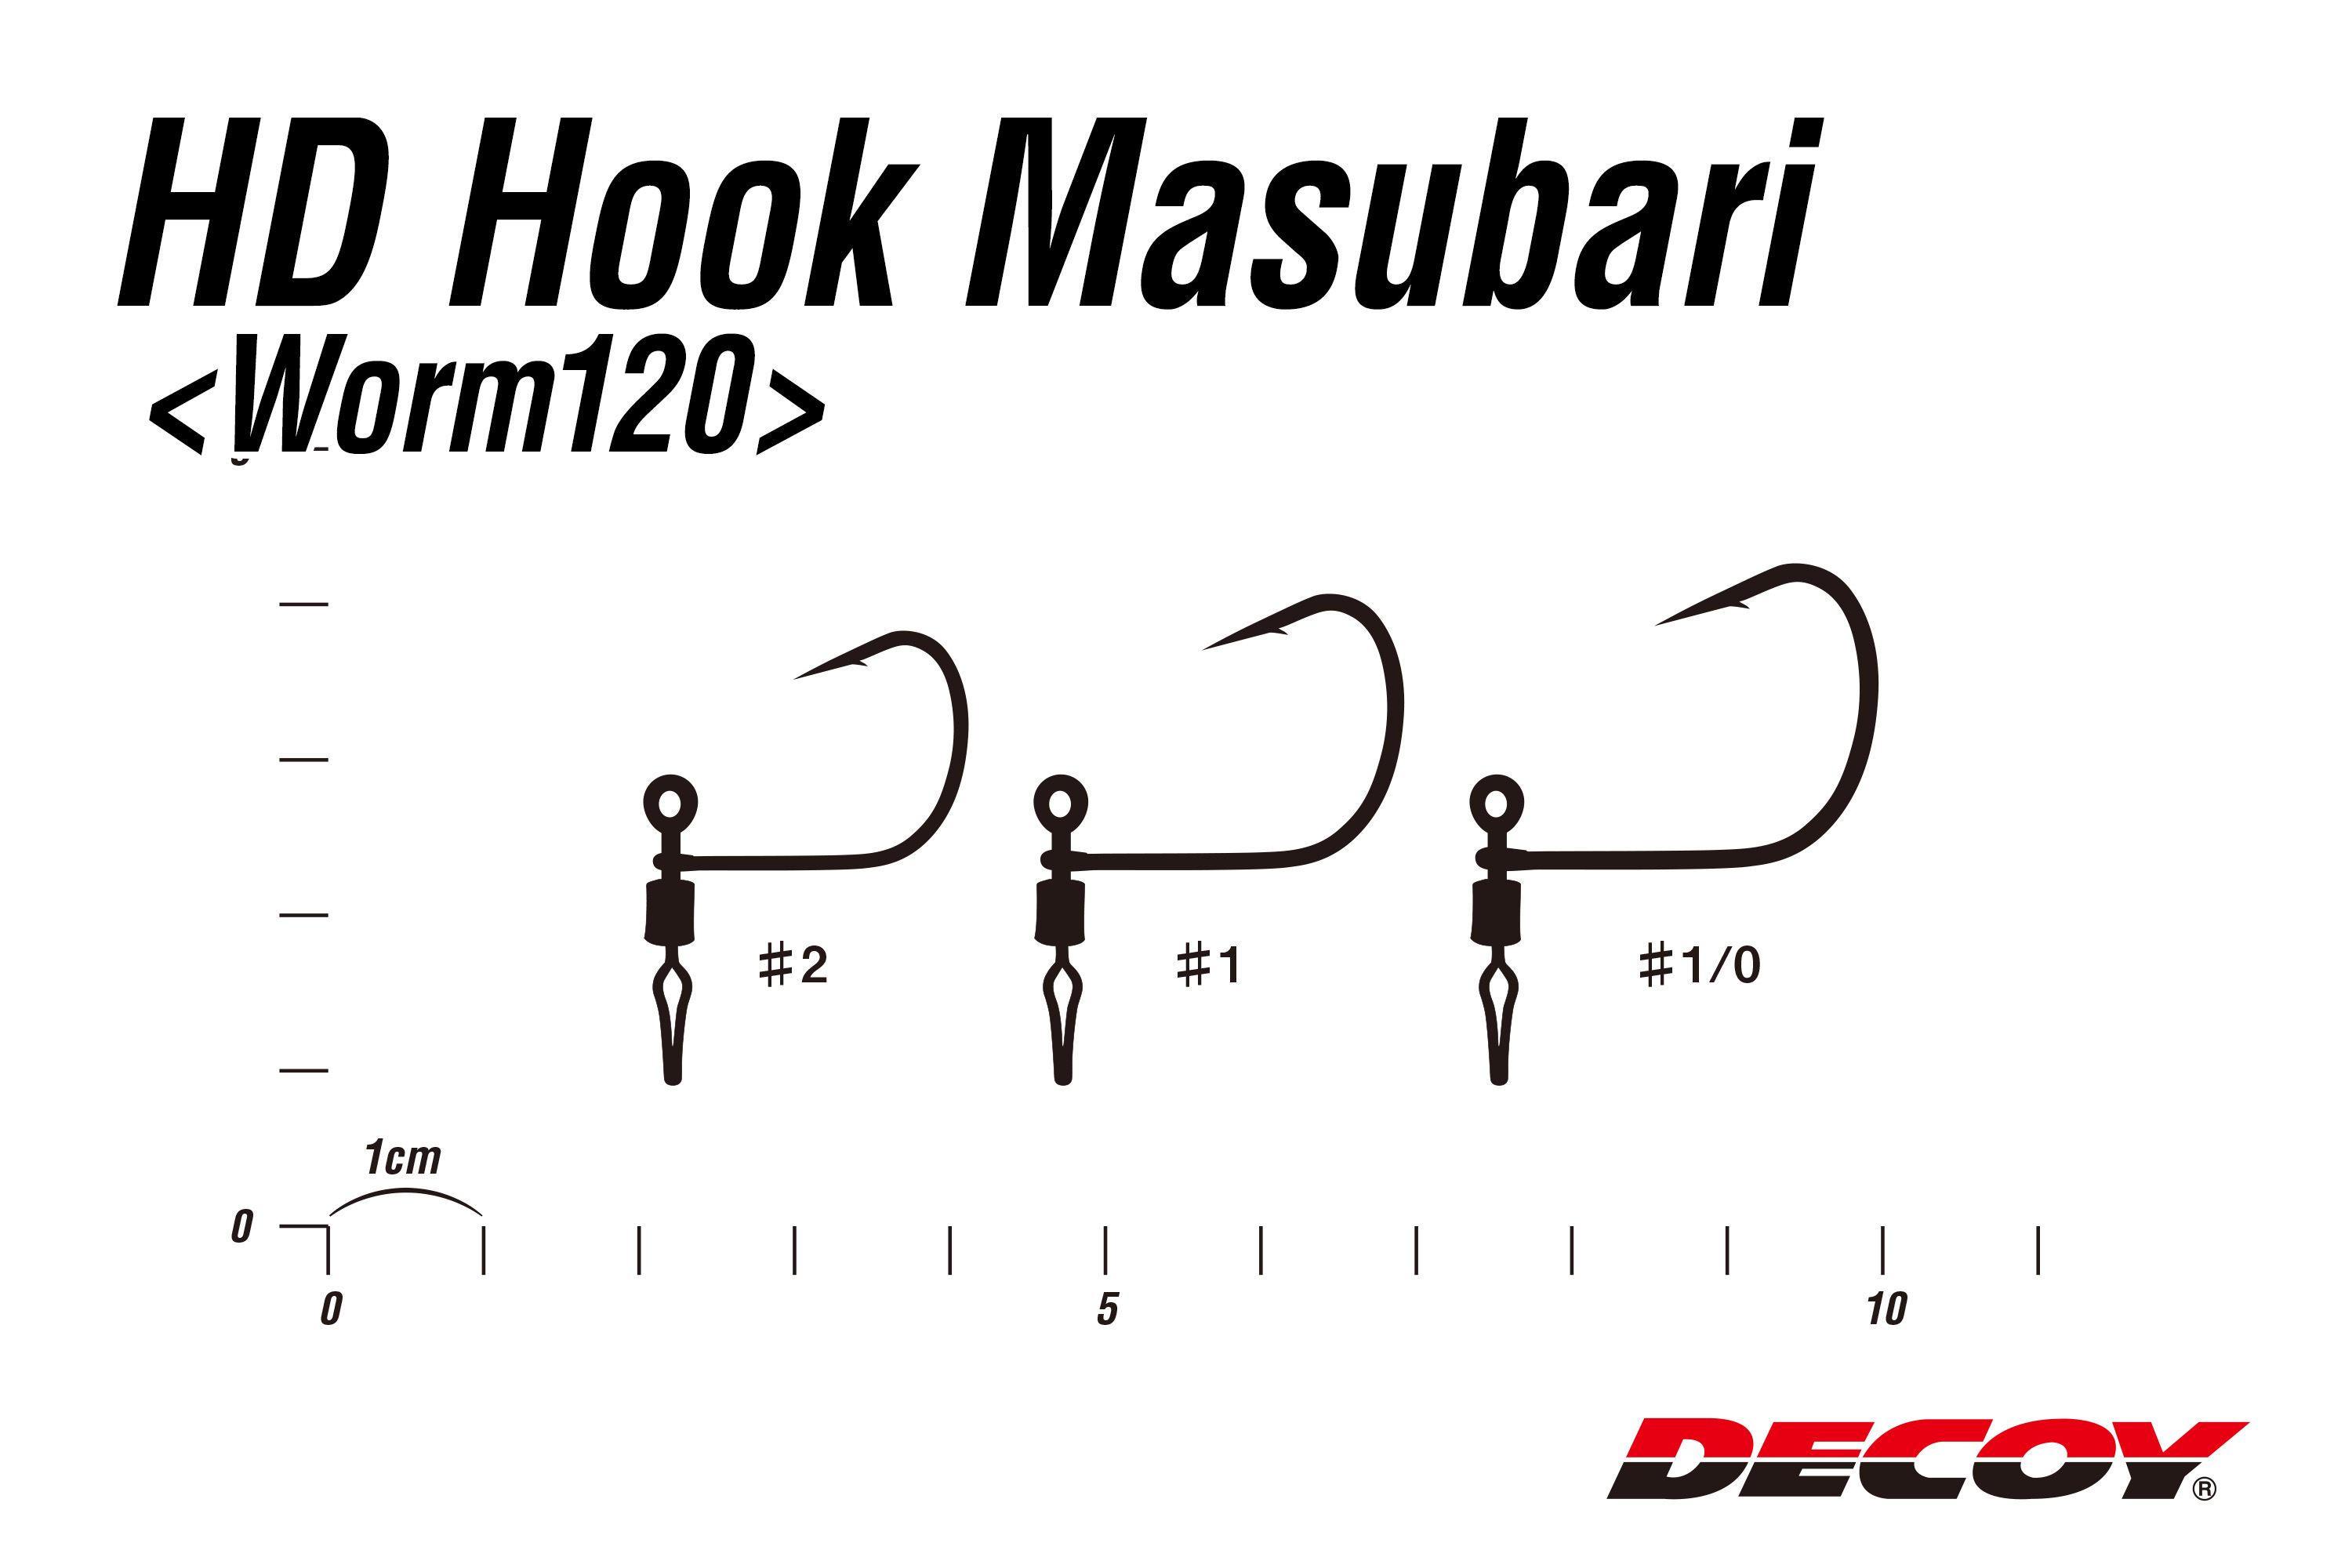 Amo Decoy Worm 120 HD Hook Masubari